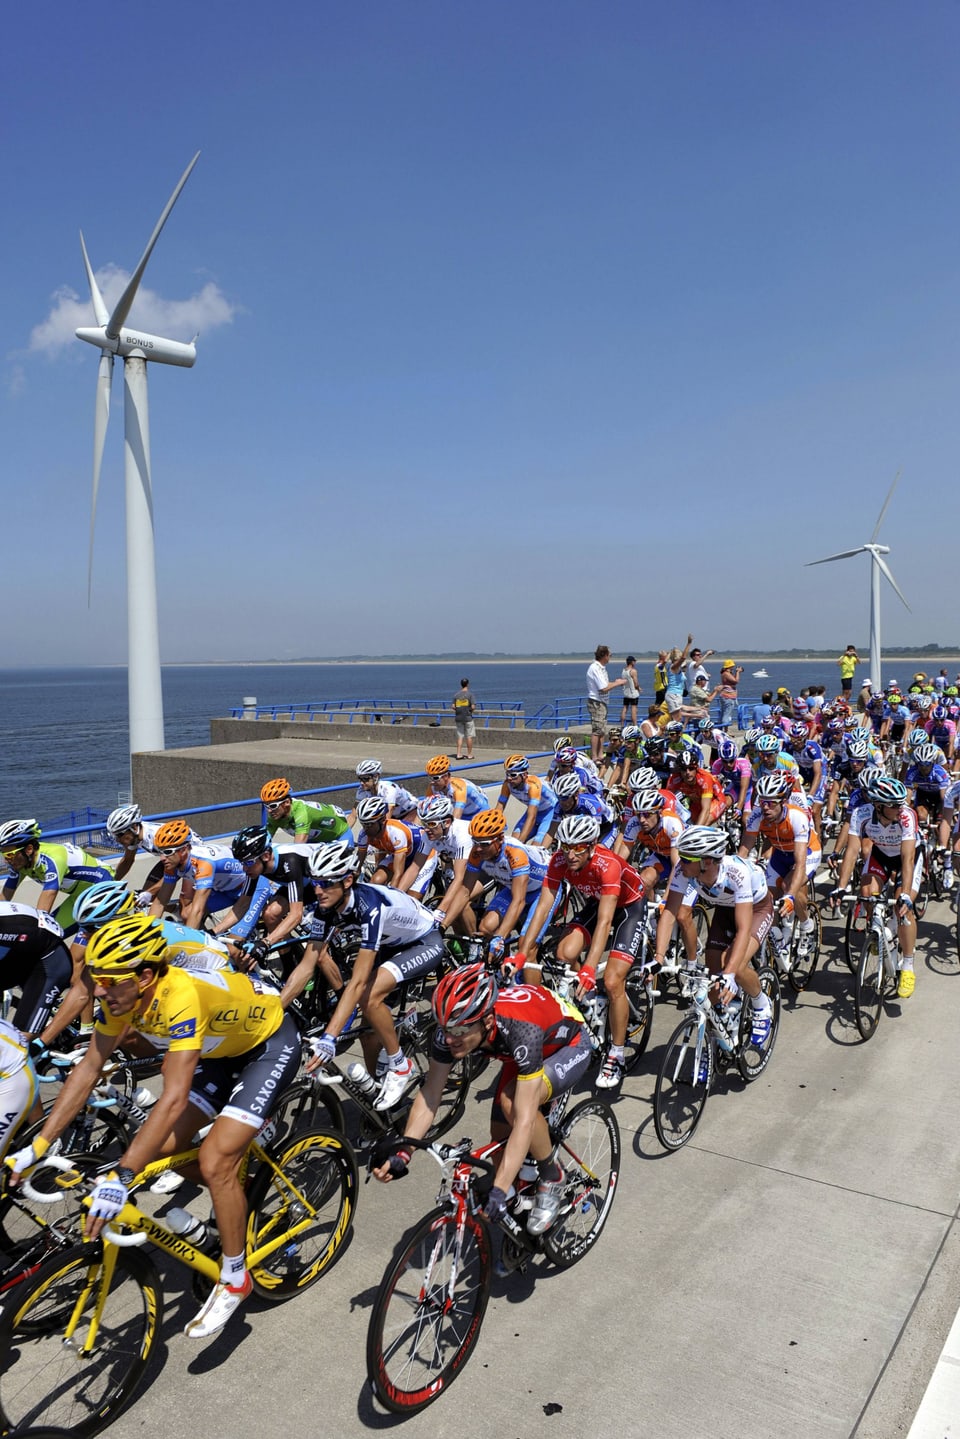 An der Nordseeküste weht der Wind. Fabian Cancellara an der Tour 2010 im Maillot jaune.